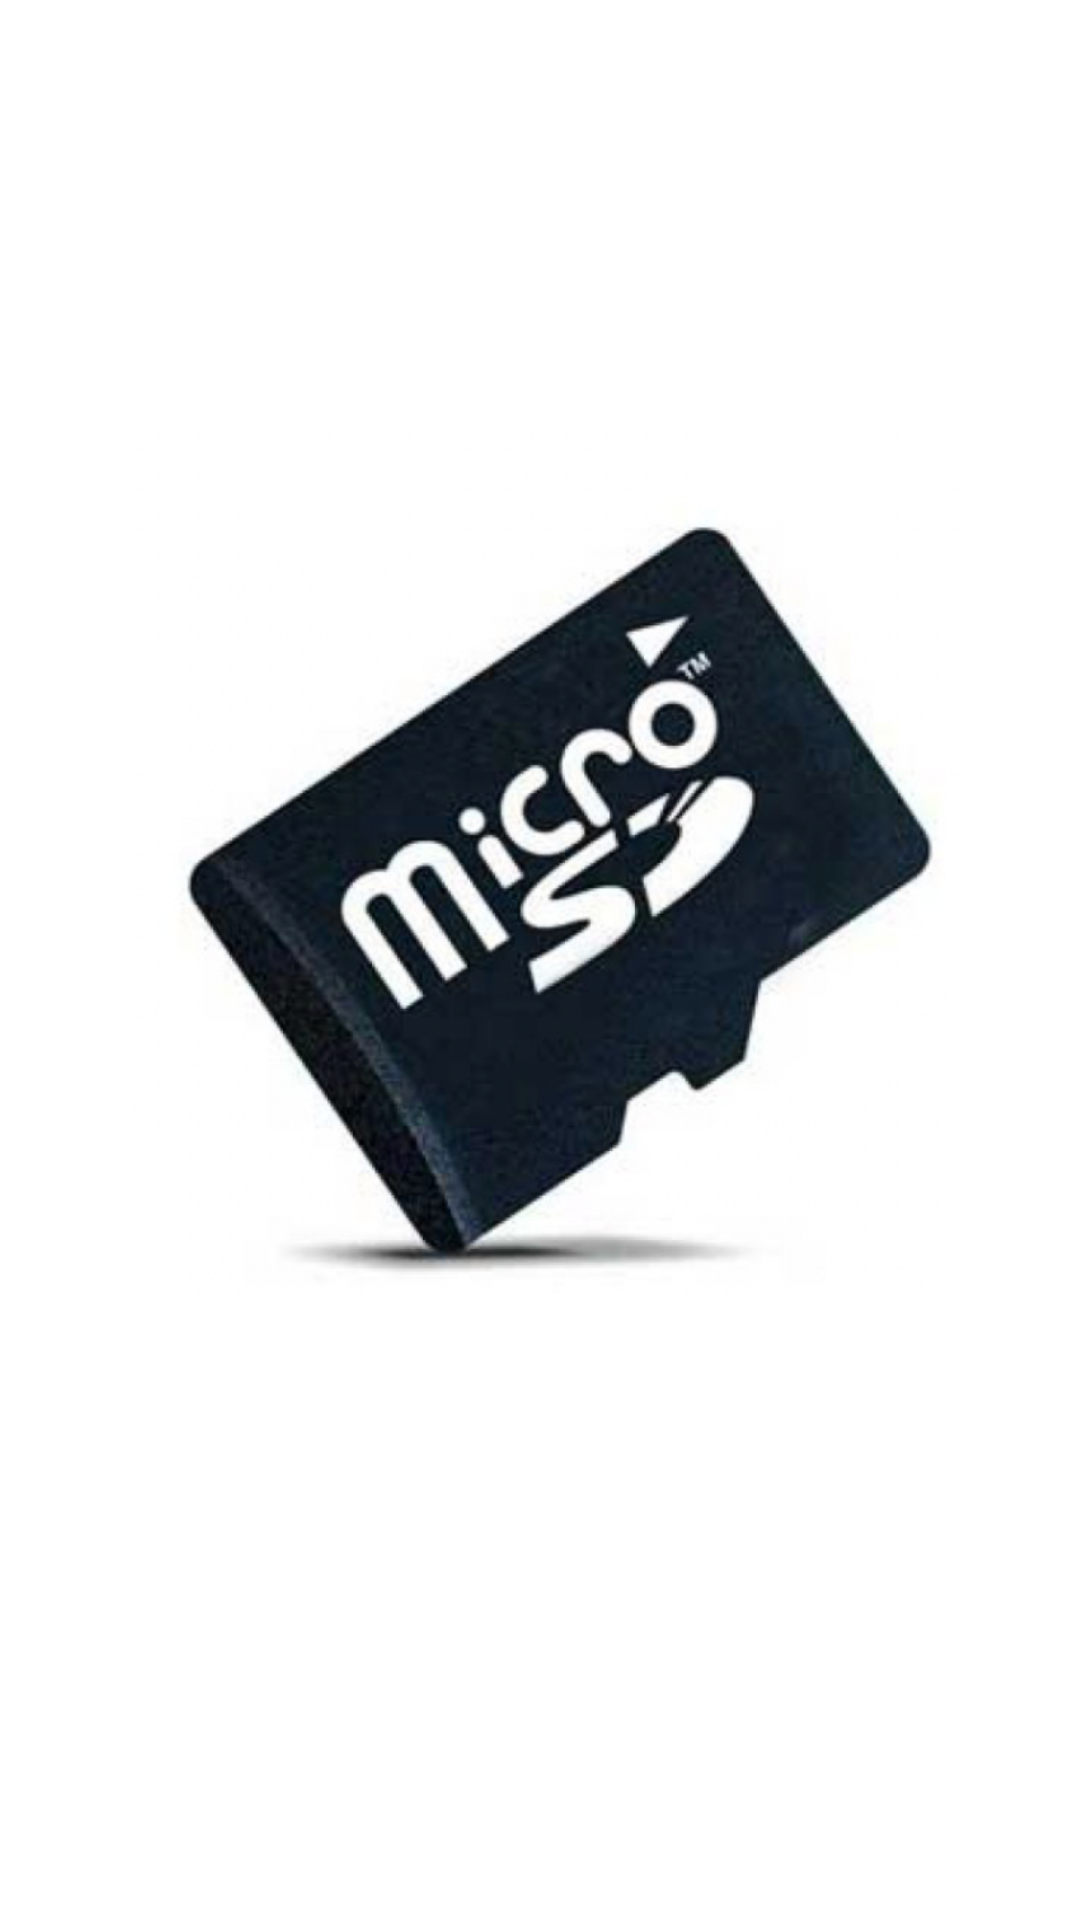 Камера микро сд. MICROSD Sony 16gb. Микро флешка. Флешка карта. Флешка на прозрачном фоне.